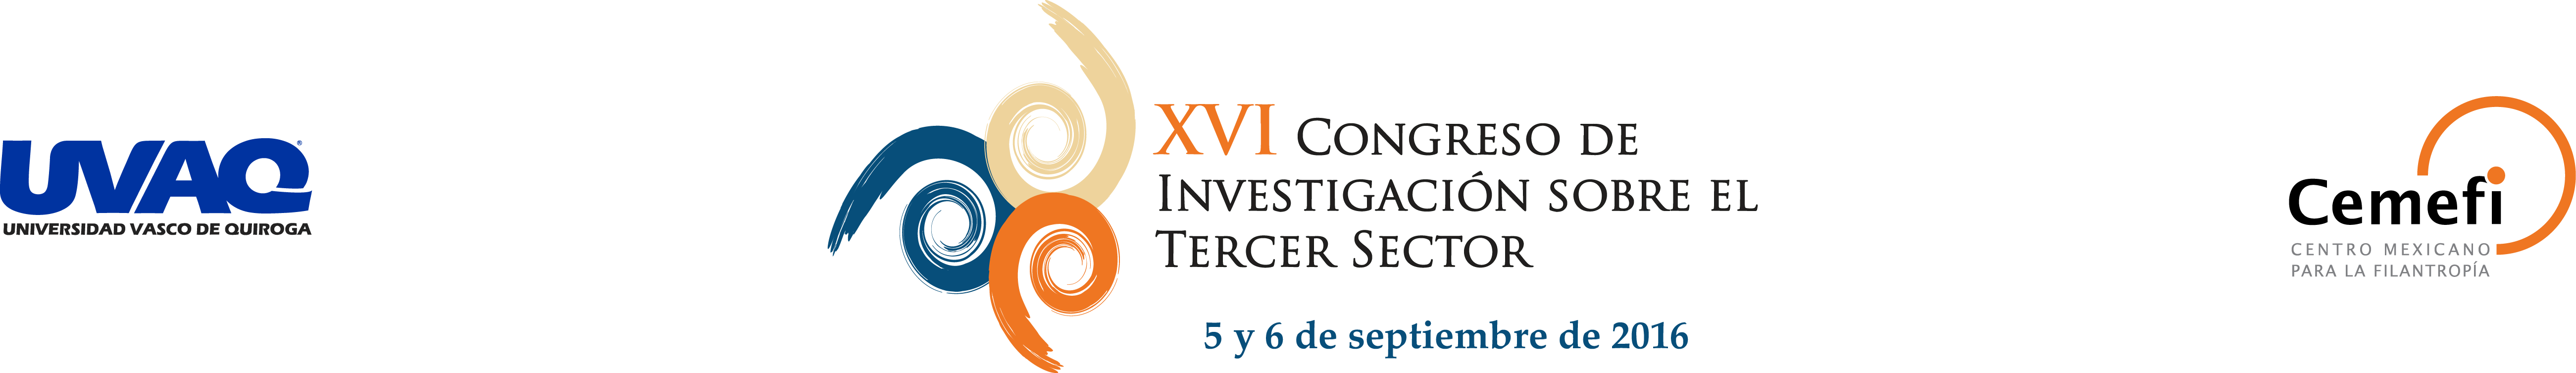 XVI Congreso de Investigación sobre el Tercer Sector